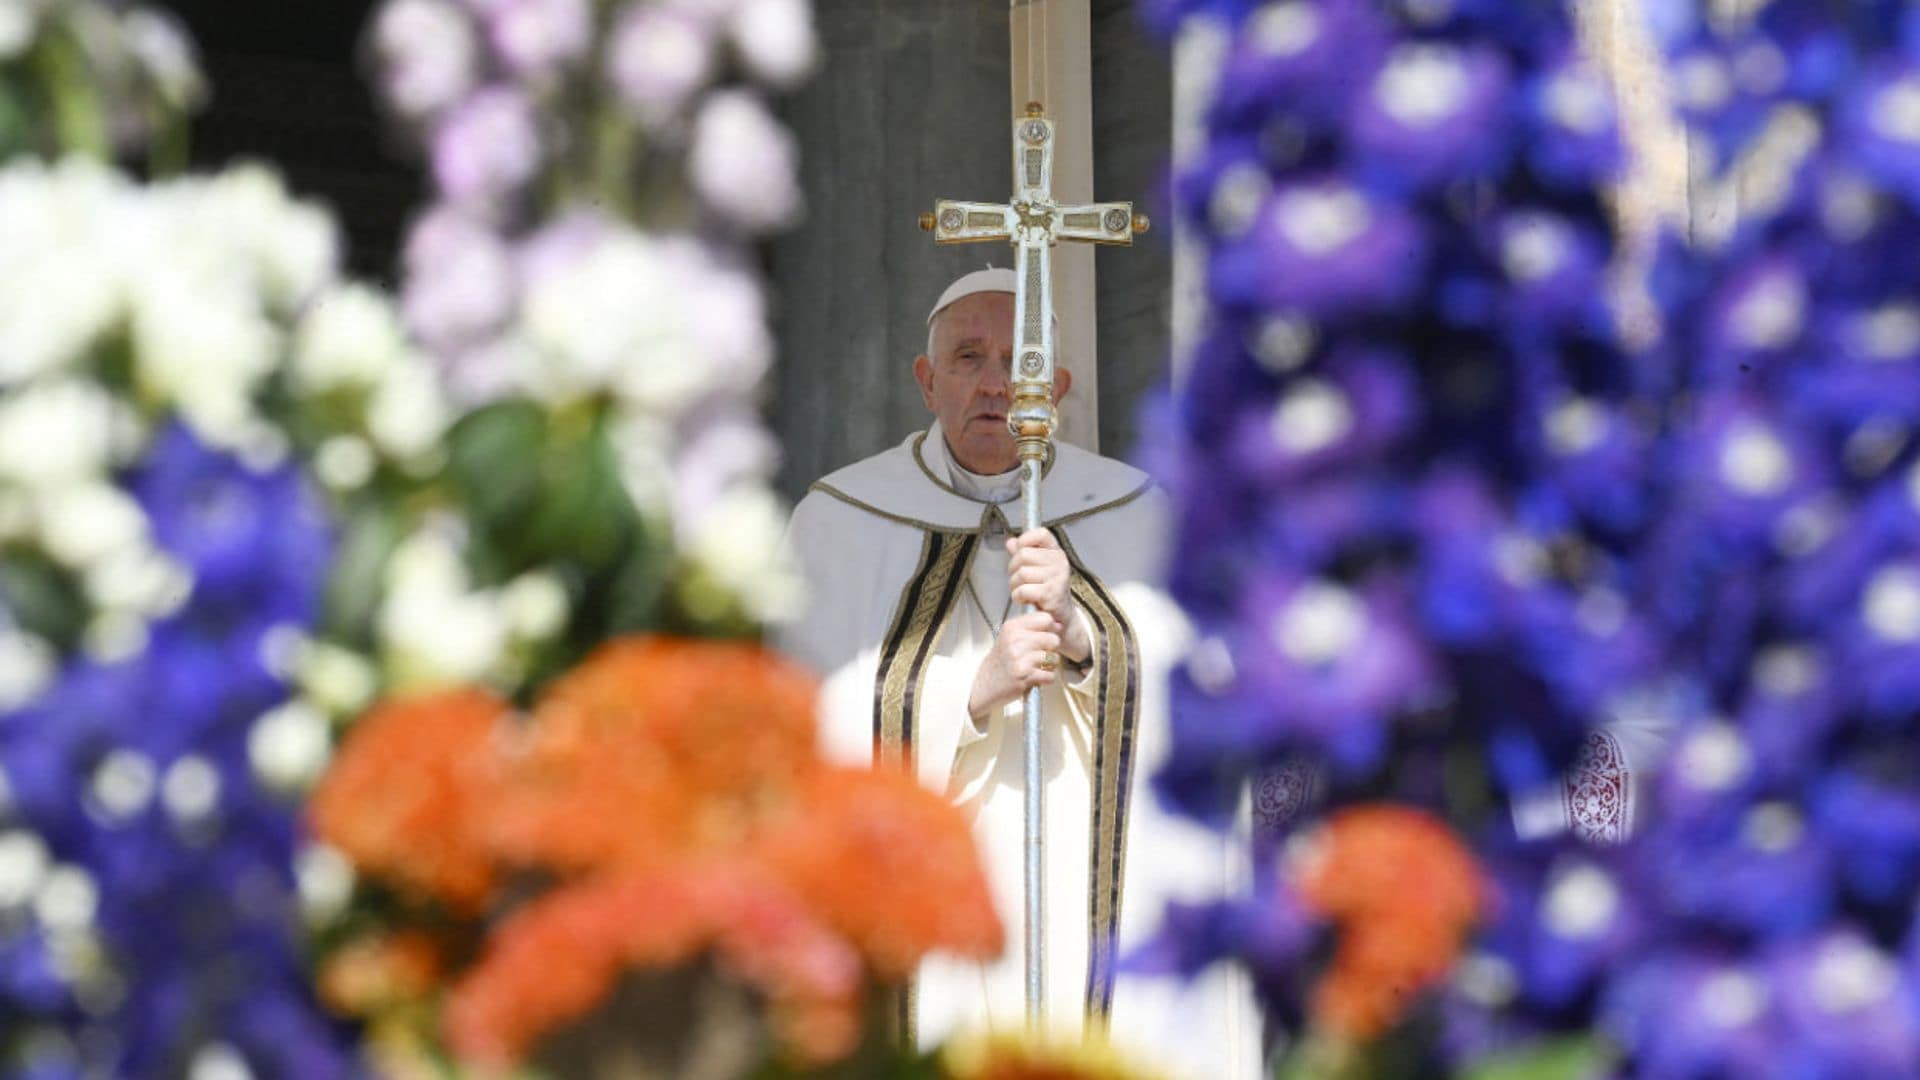 El Papa Francisco preside la Misa del Domingo de Resurrección tras su reciente ingreso hospitalario